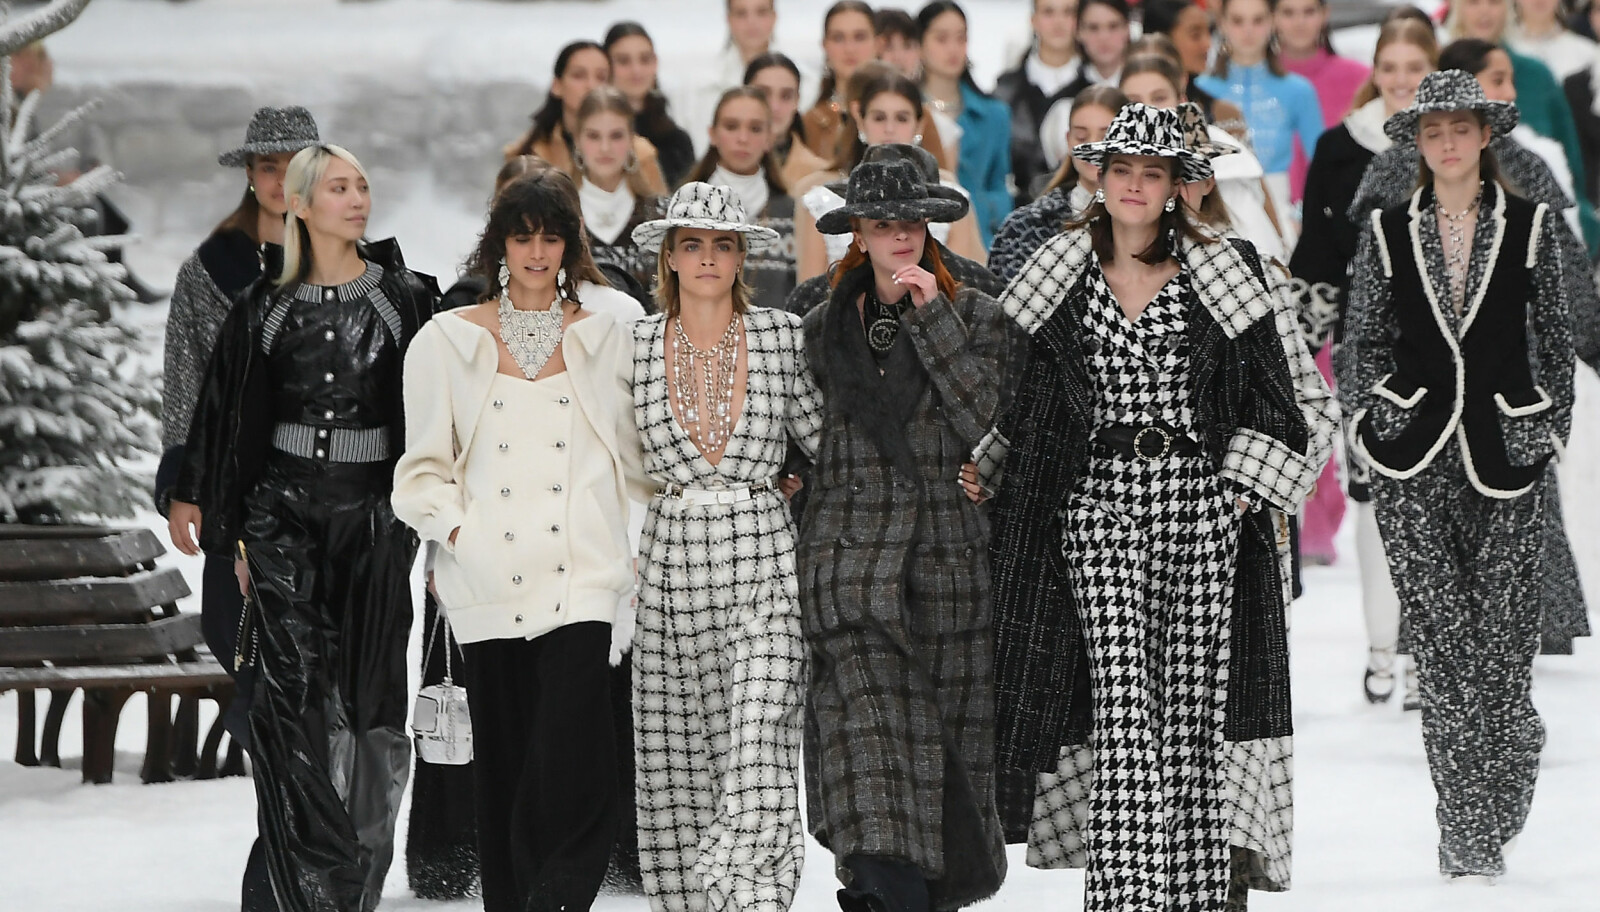 EMOSJONELT ØYEBLIKK: Flere av modellene på catwalken under Chanels FW19/20-show tørket tårer. Det var den siste kolleksjonen Karl Lagerfeld designet før sin død 19. februar i år.